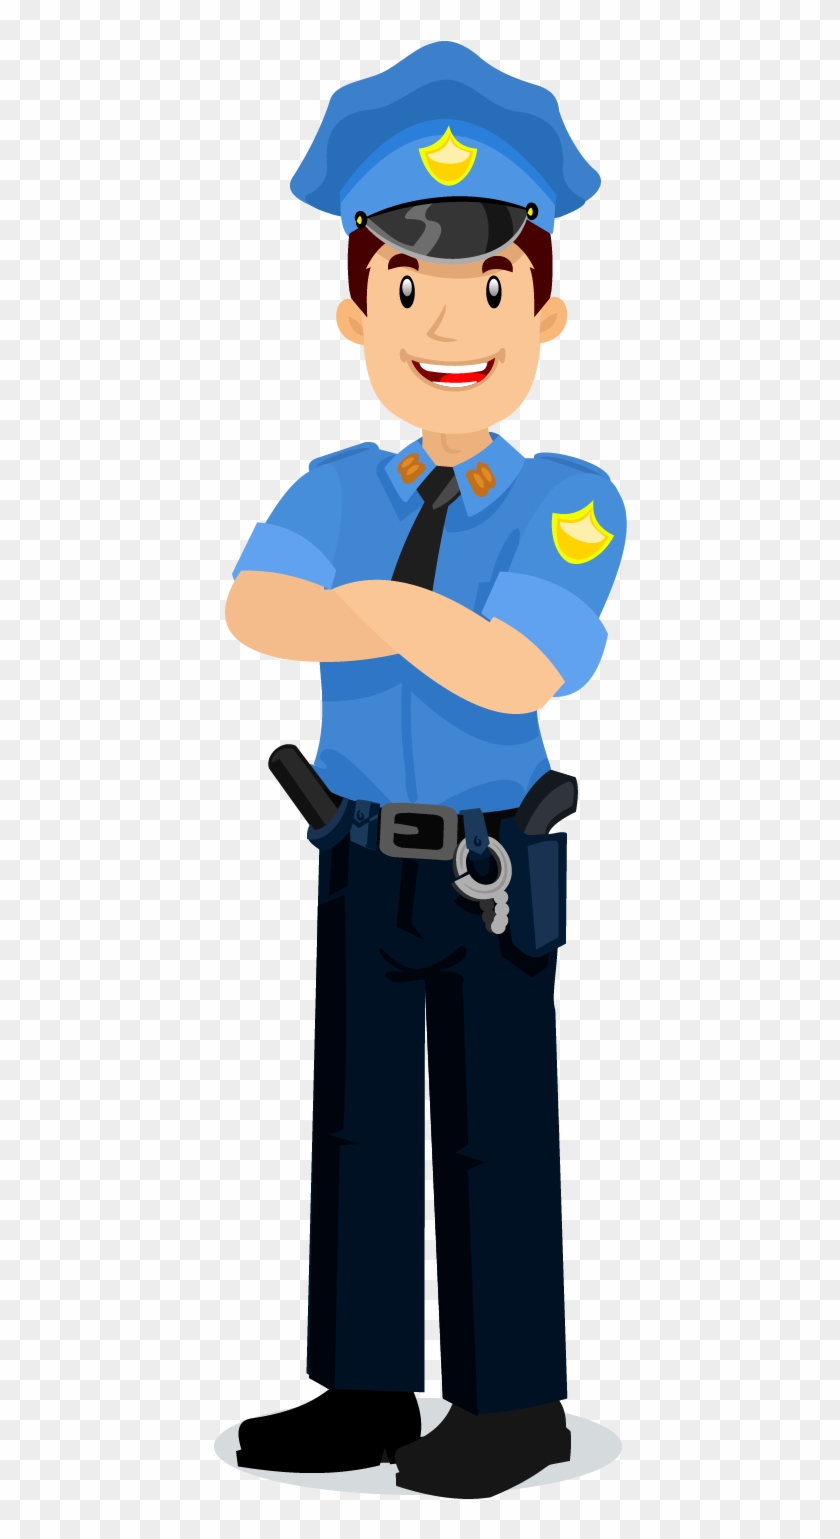 Profession Police Officer Illustration - Officer Illustration Png #447284